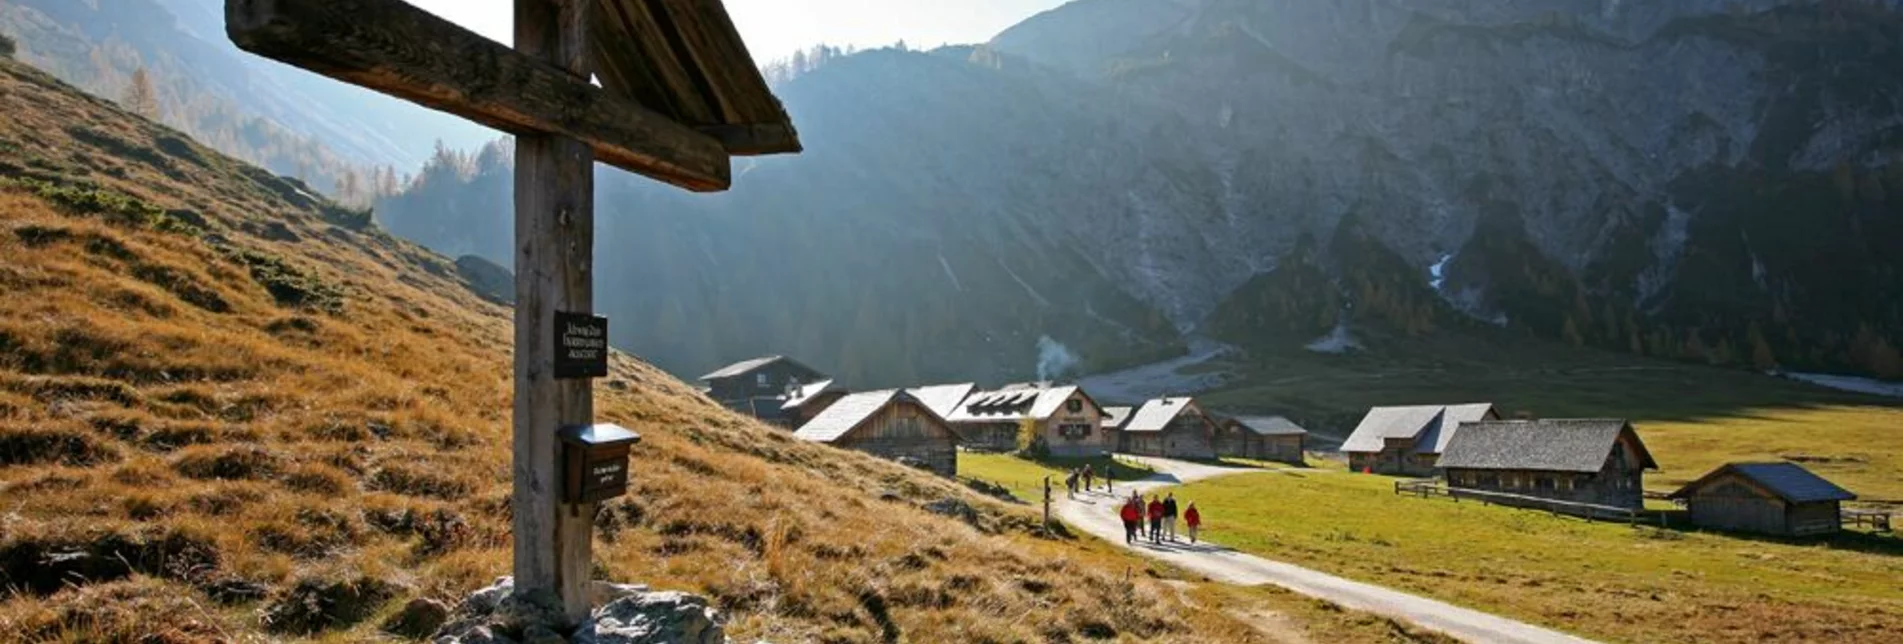 Bergtour Rund um die steirische Kalkspitze - Touren-Impression #1 | © Tourismusverband Schladming - Herbert Raffalt